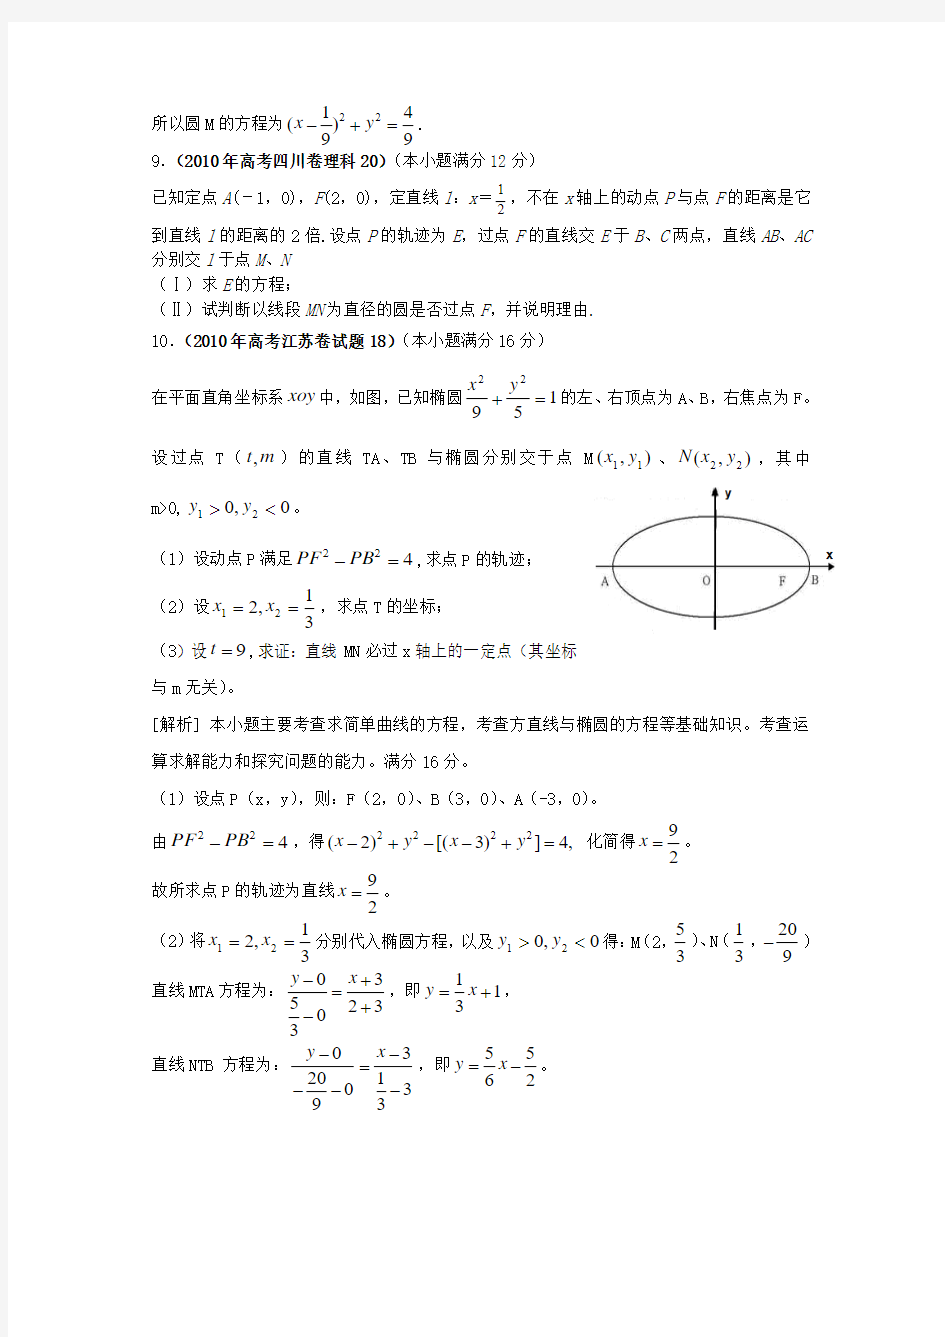 200年高考数学真题-圆锥曲线(5)